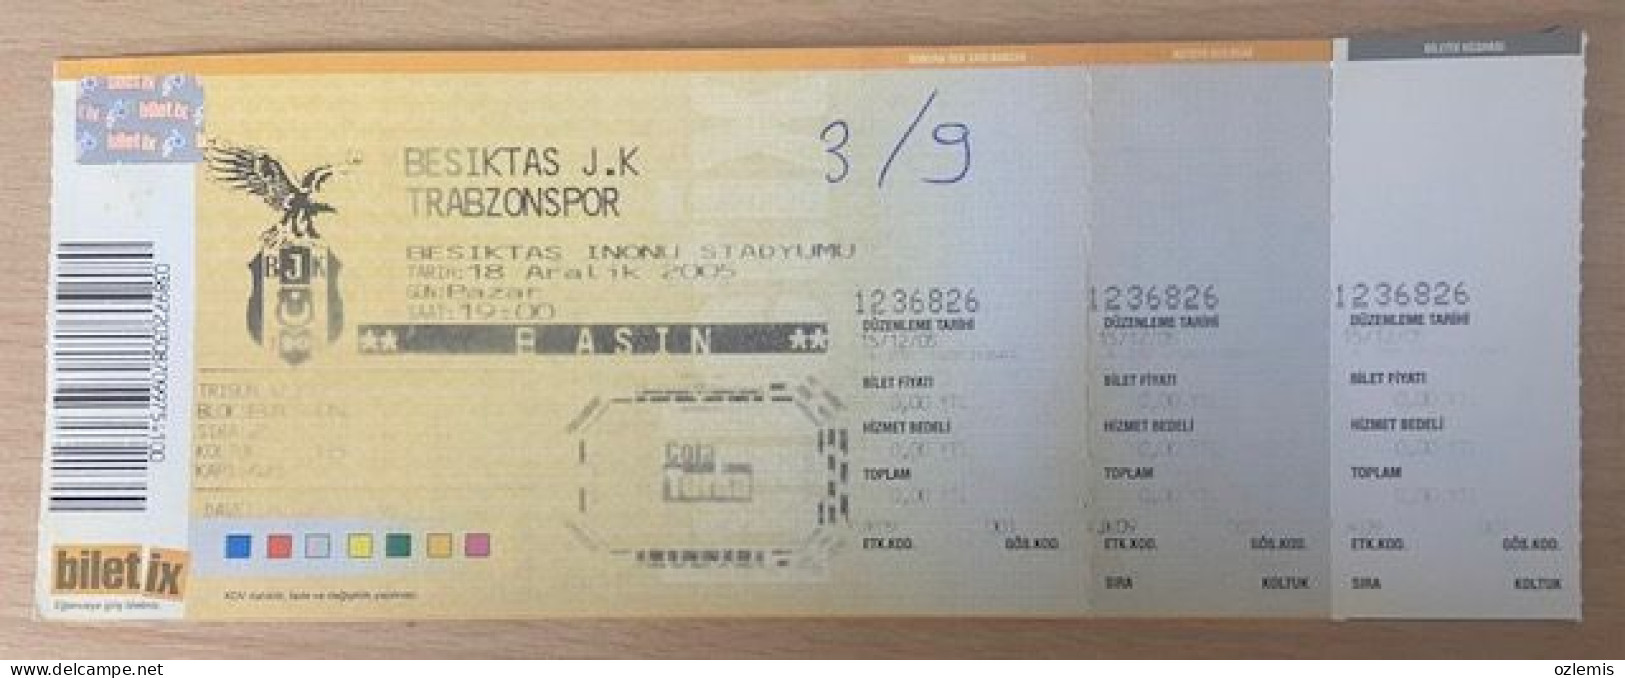 BESIKTAS - TRABZONSPOR ,MATCH TICKET ,2005 - Tickets D'entrée